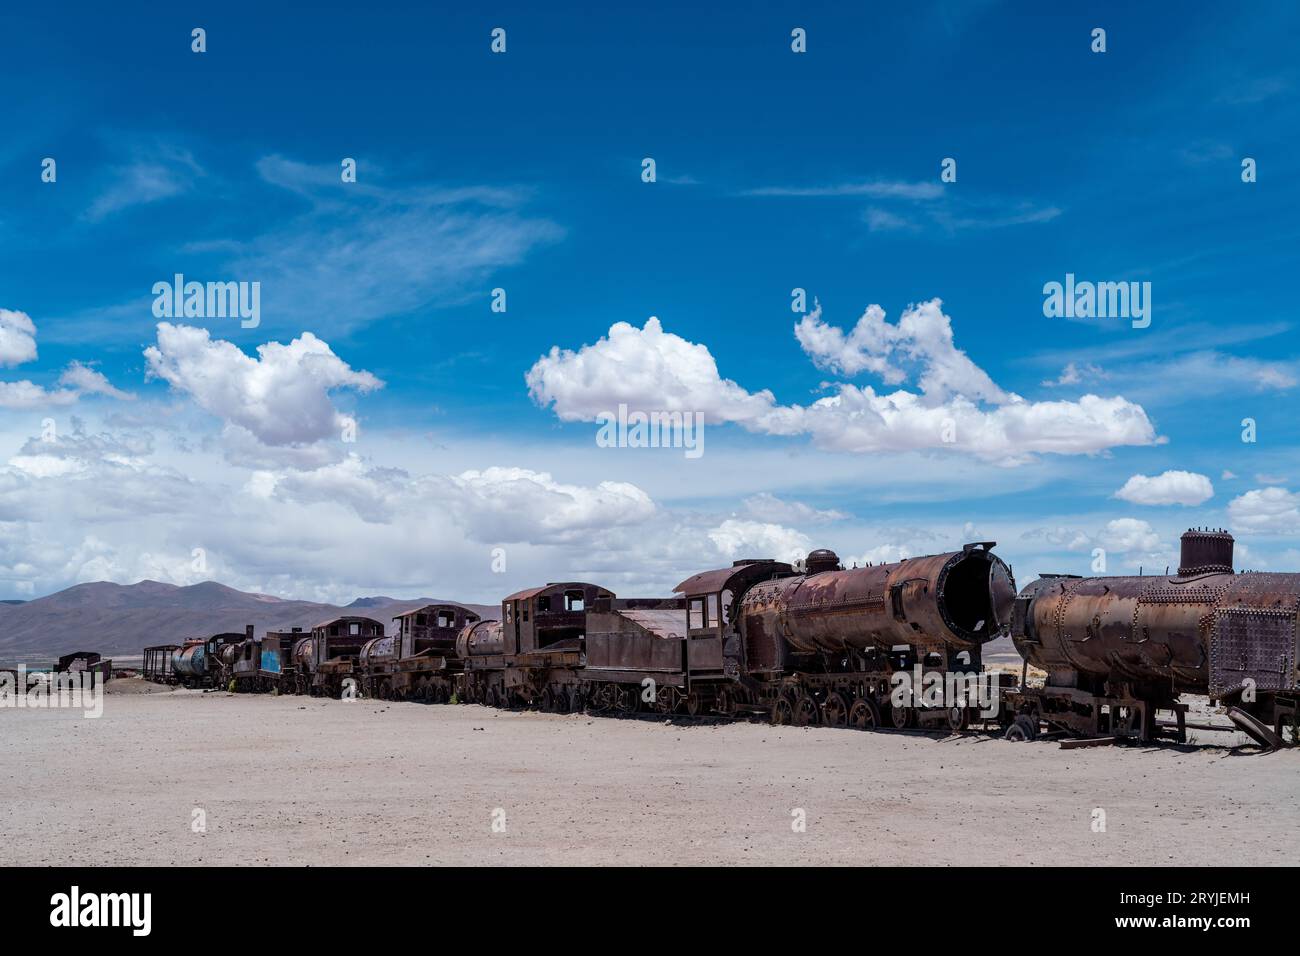 Cimitero dei treni nell'altiplano boliviano. Foto di alta qualità Foto Stock